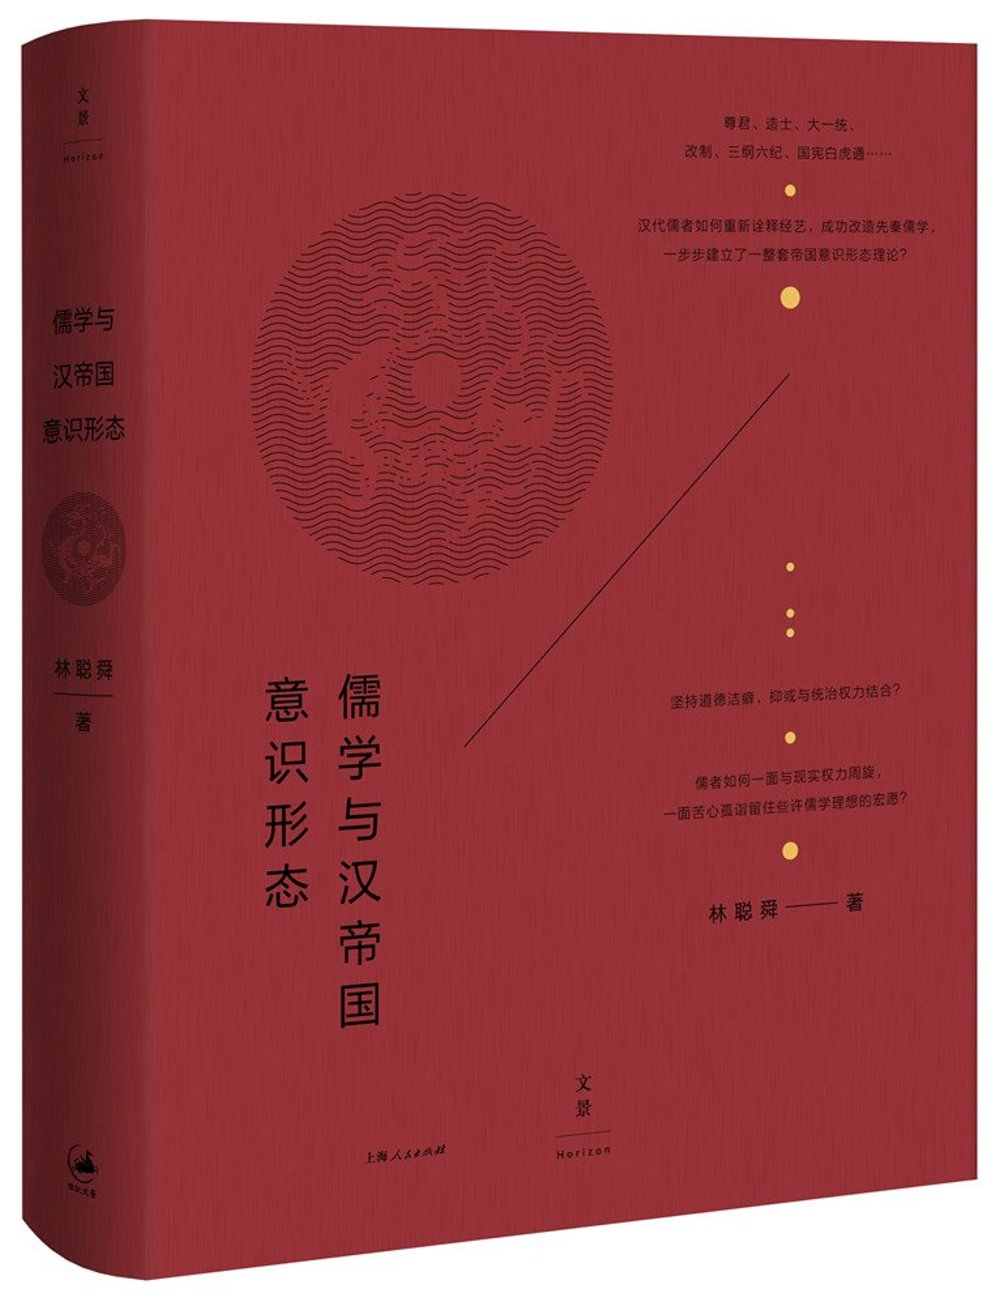 儒學與漢帝國意識形態